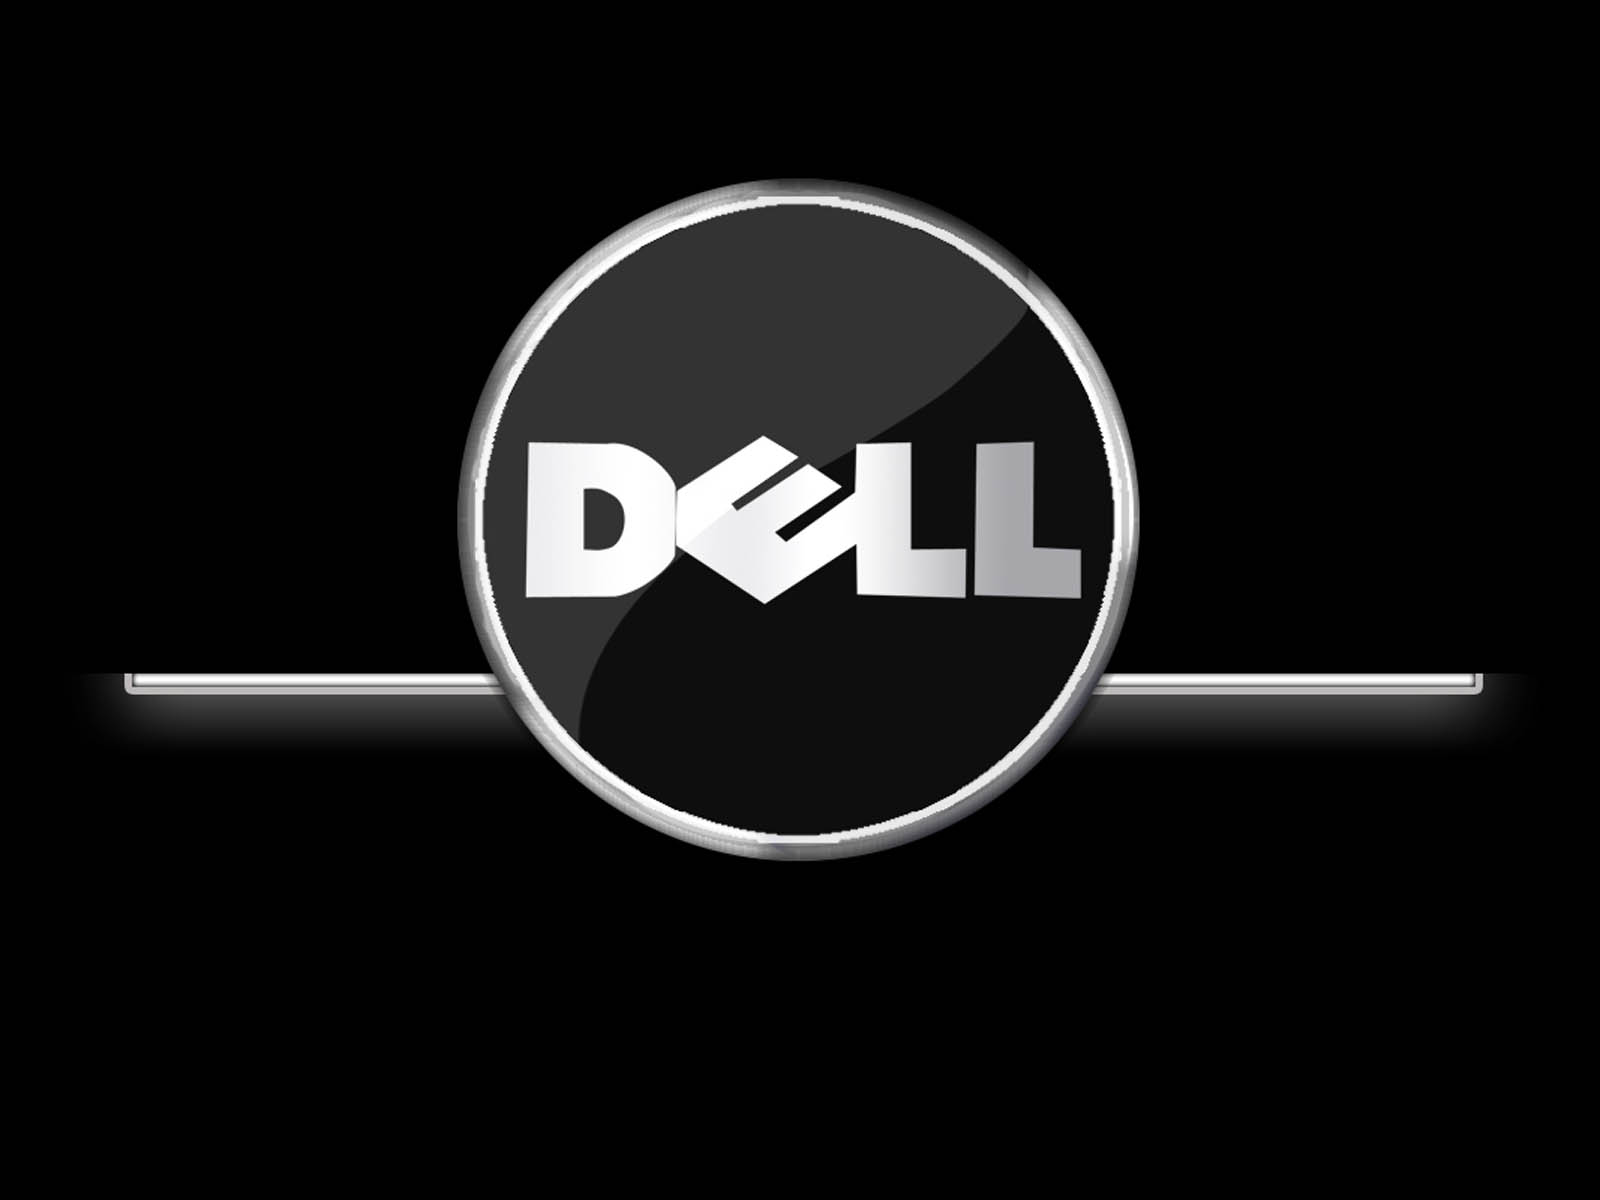 Dell Desktop Wallpaper Rebsays